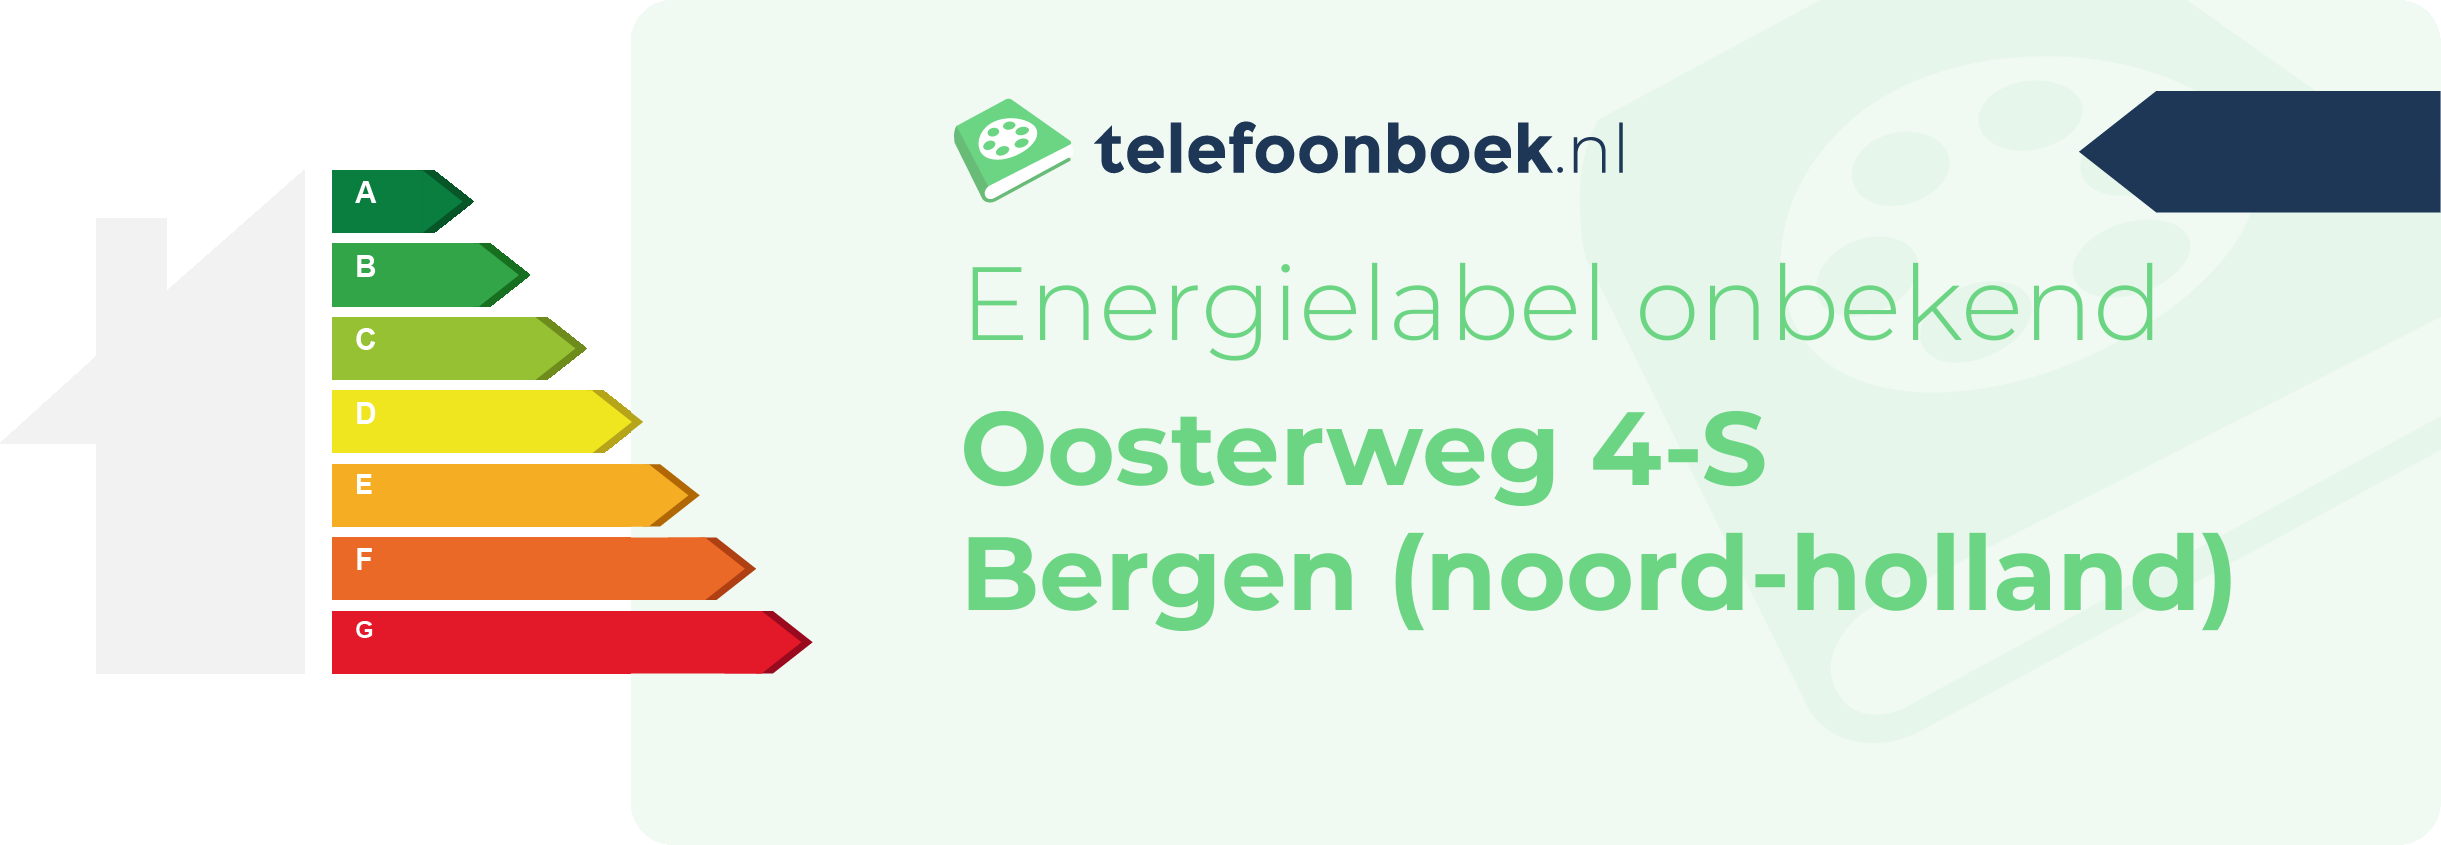 Energielabel Oosterweg 4-S Bergen (Noord-Holland)